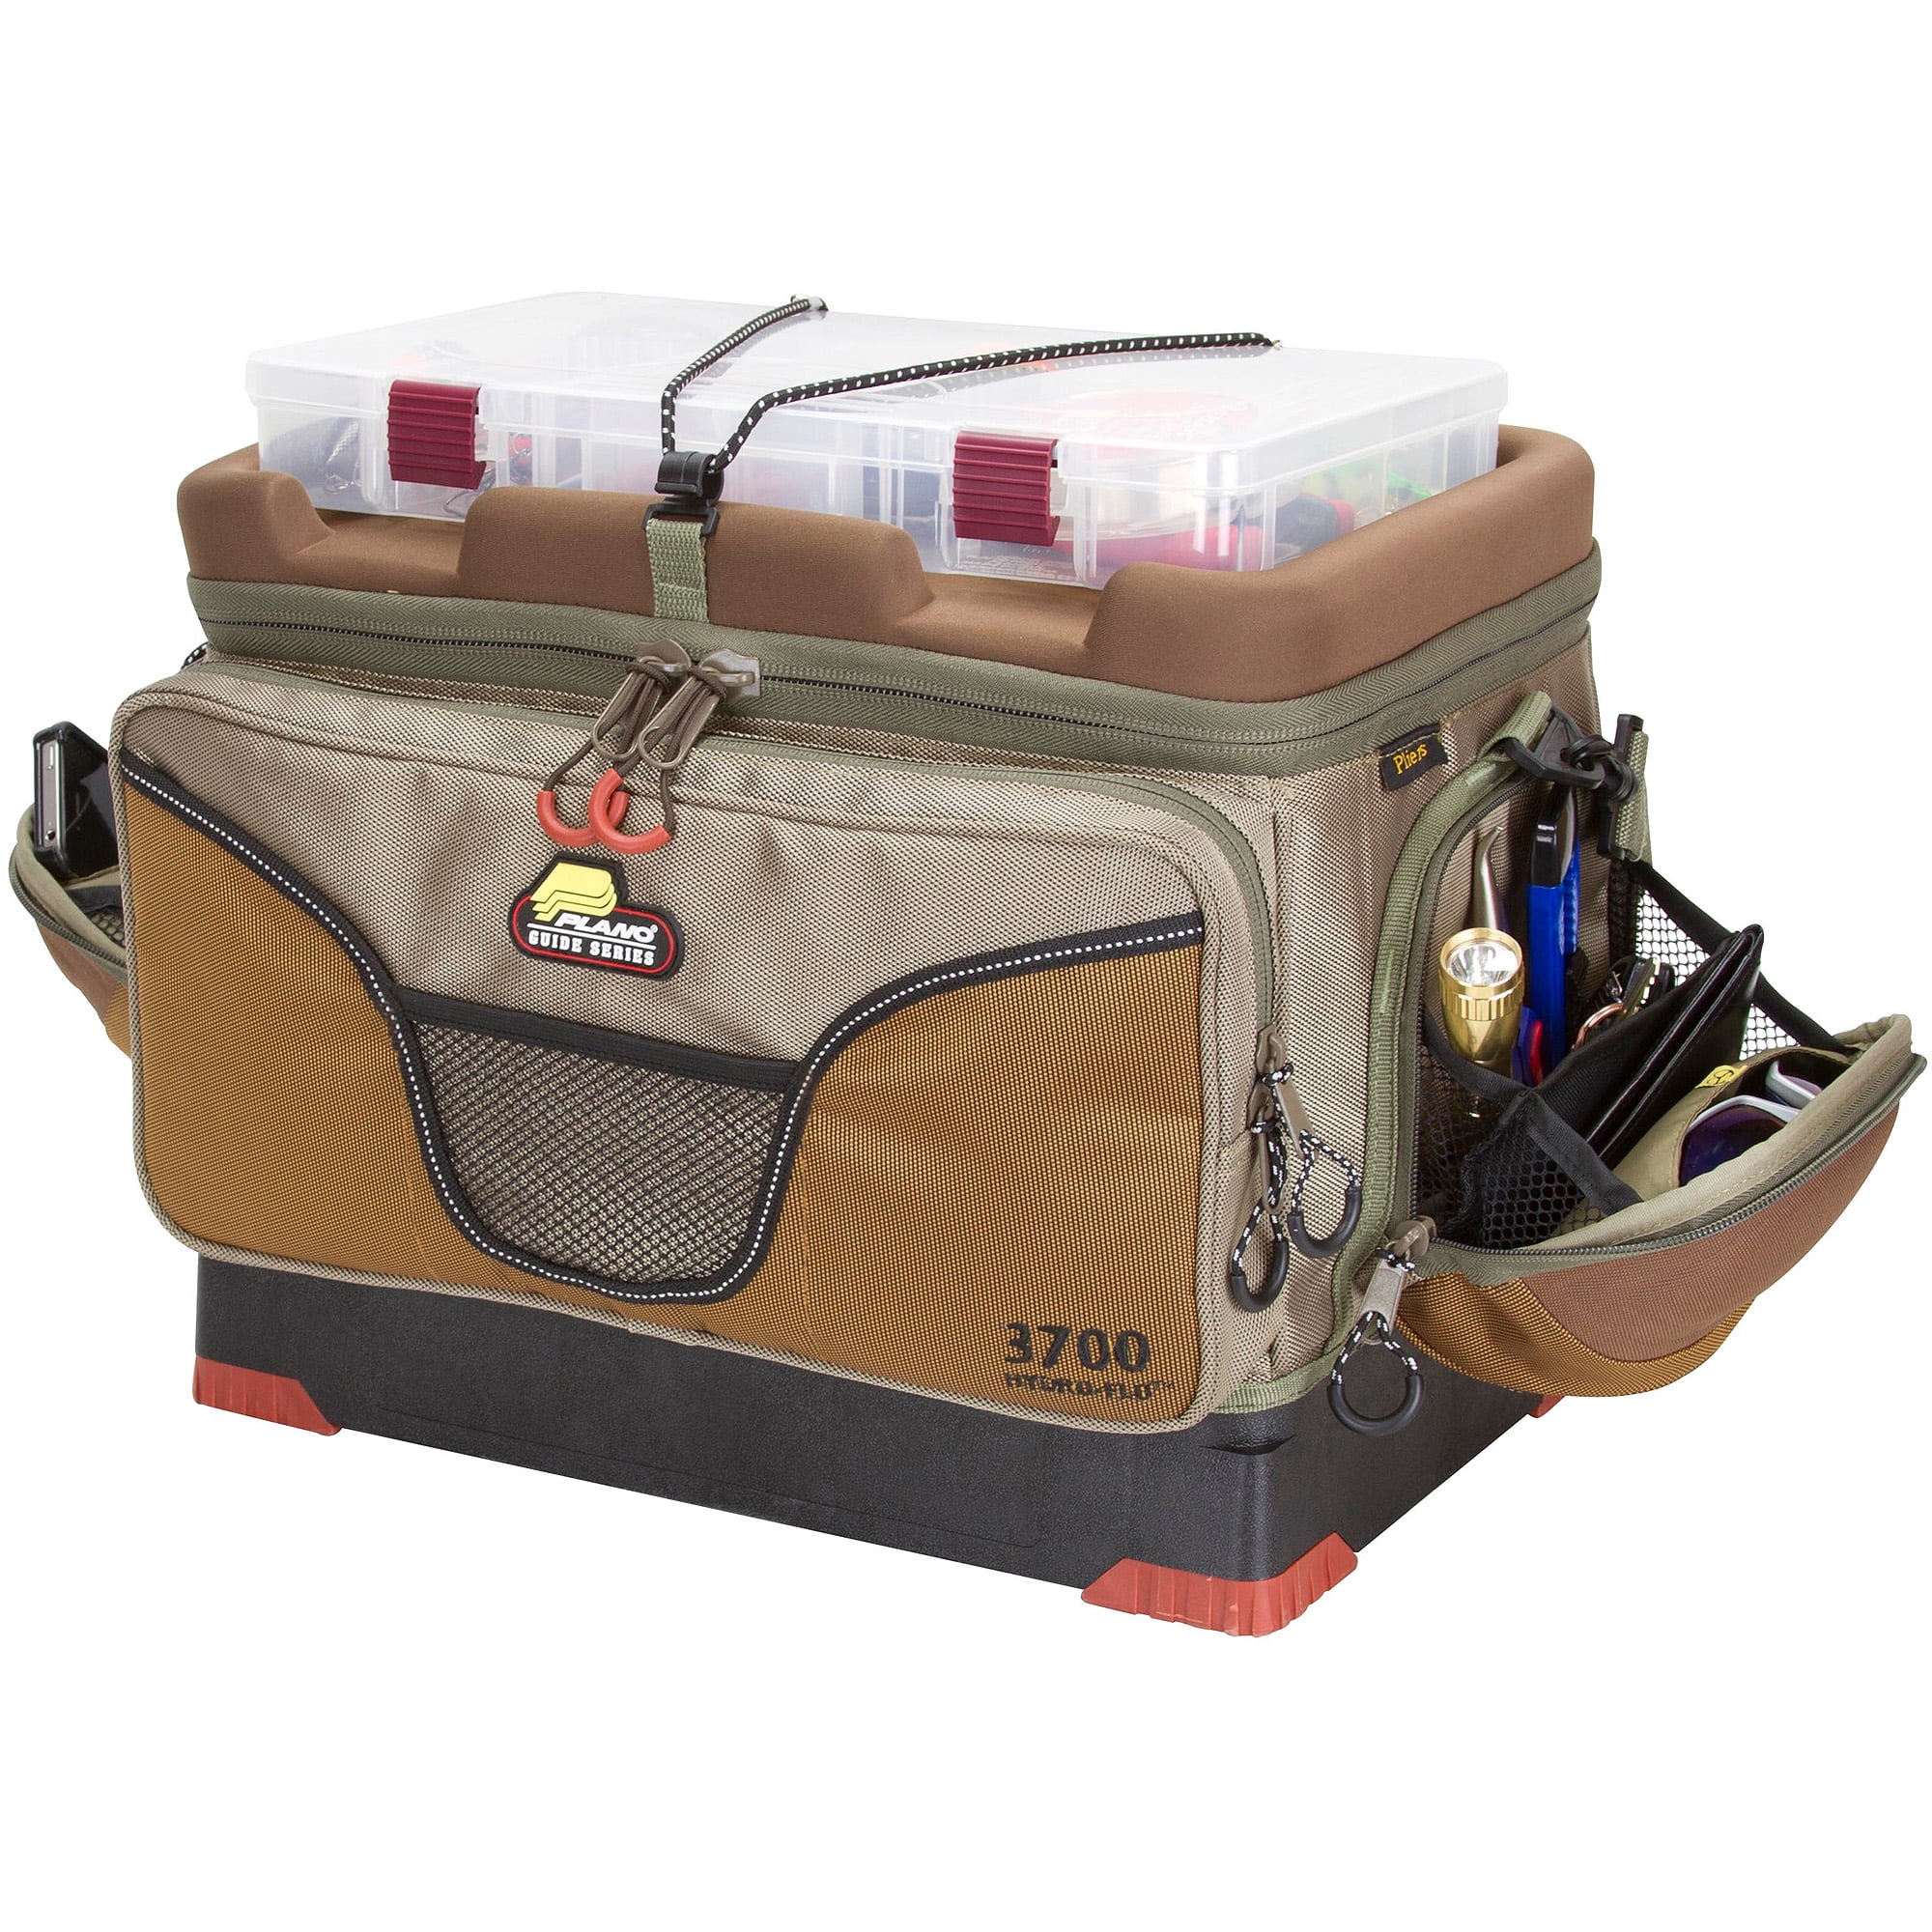 Рыболовный ящик для летней рыбалки. Plano PROLATCH 3700. Летние рыболовные сумки. Контейнер для рыболовных снастей.